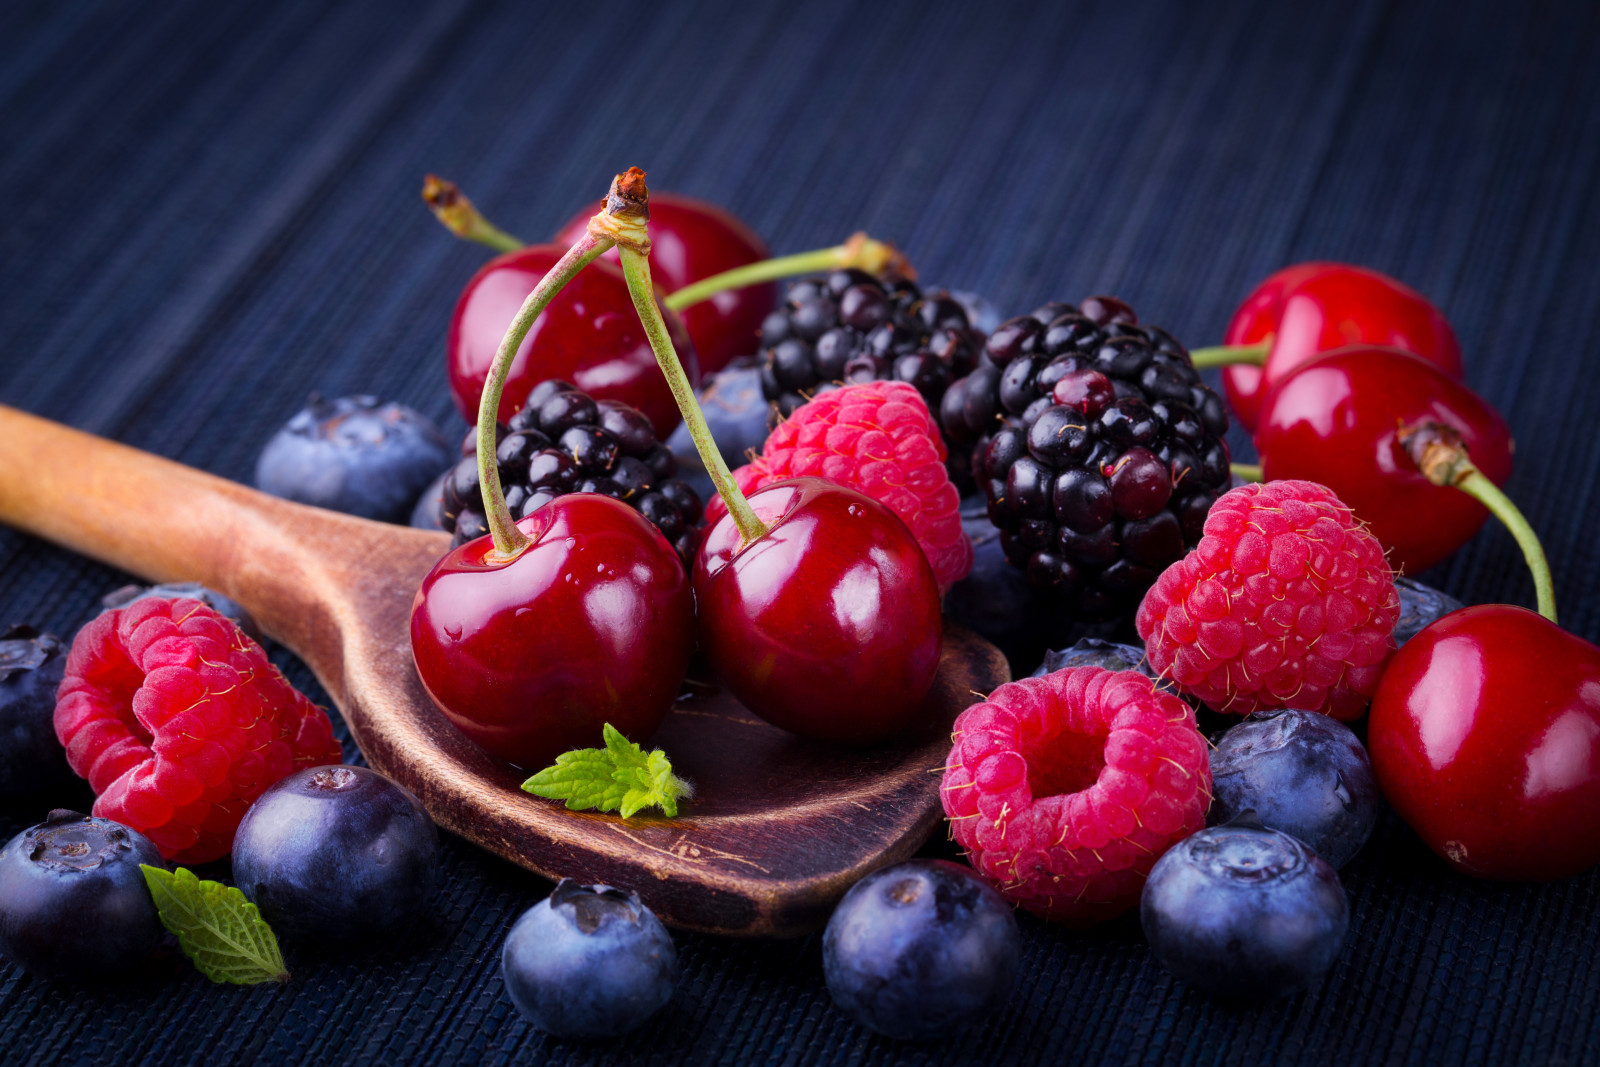 浆果, 覆盆子, 樱桃, 新鲜, 蓝莓, 黑莓